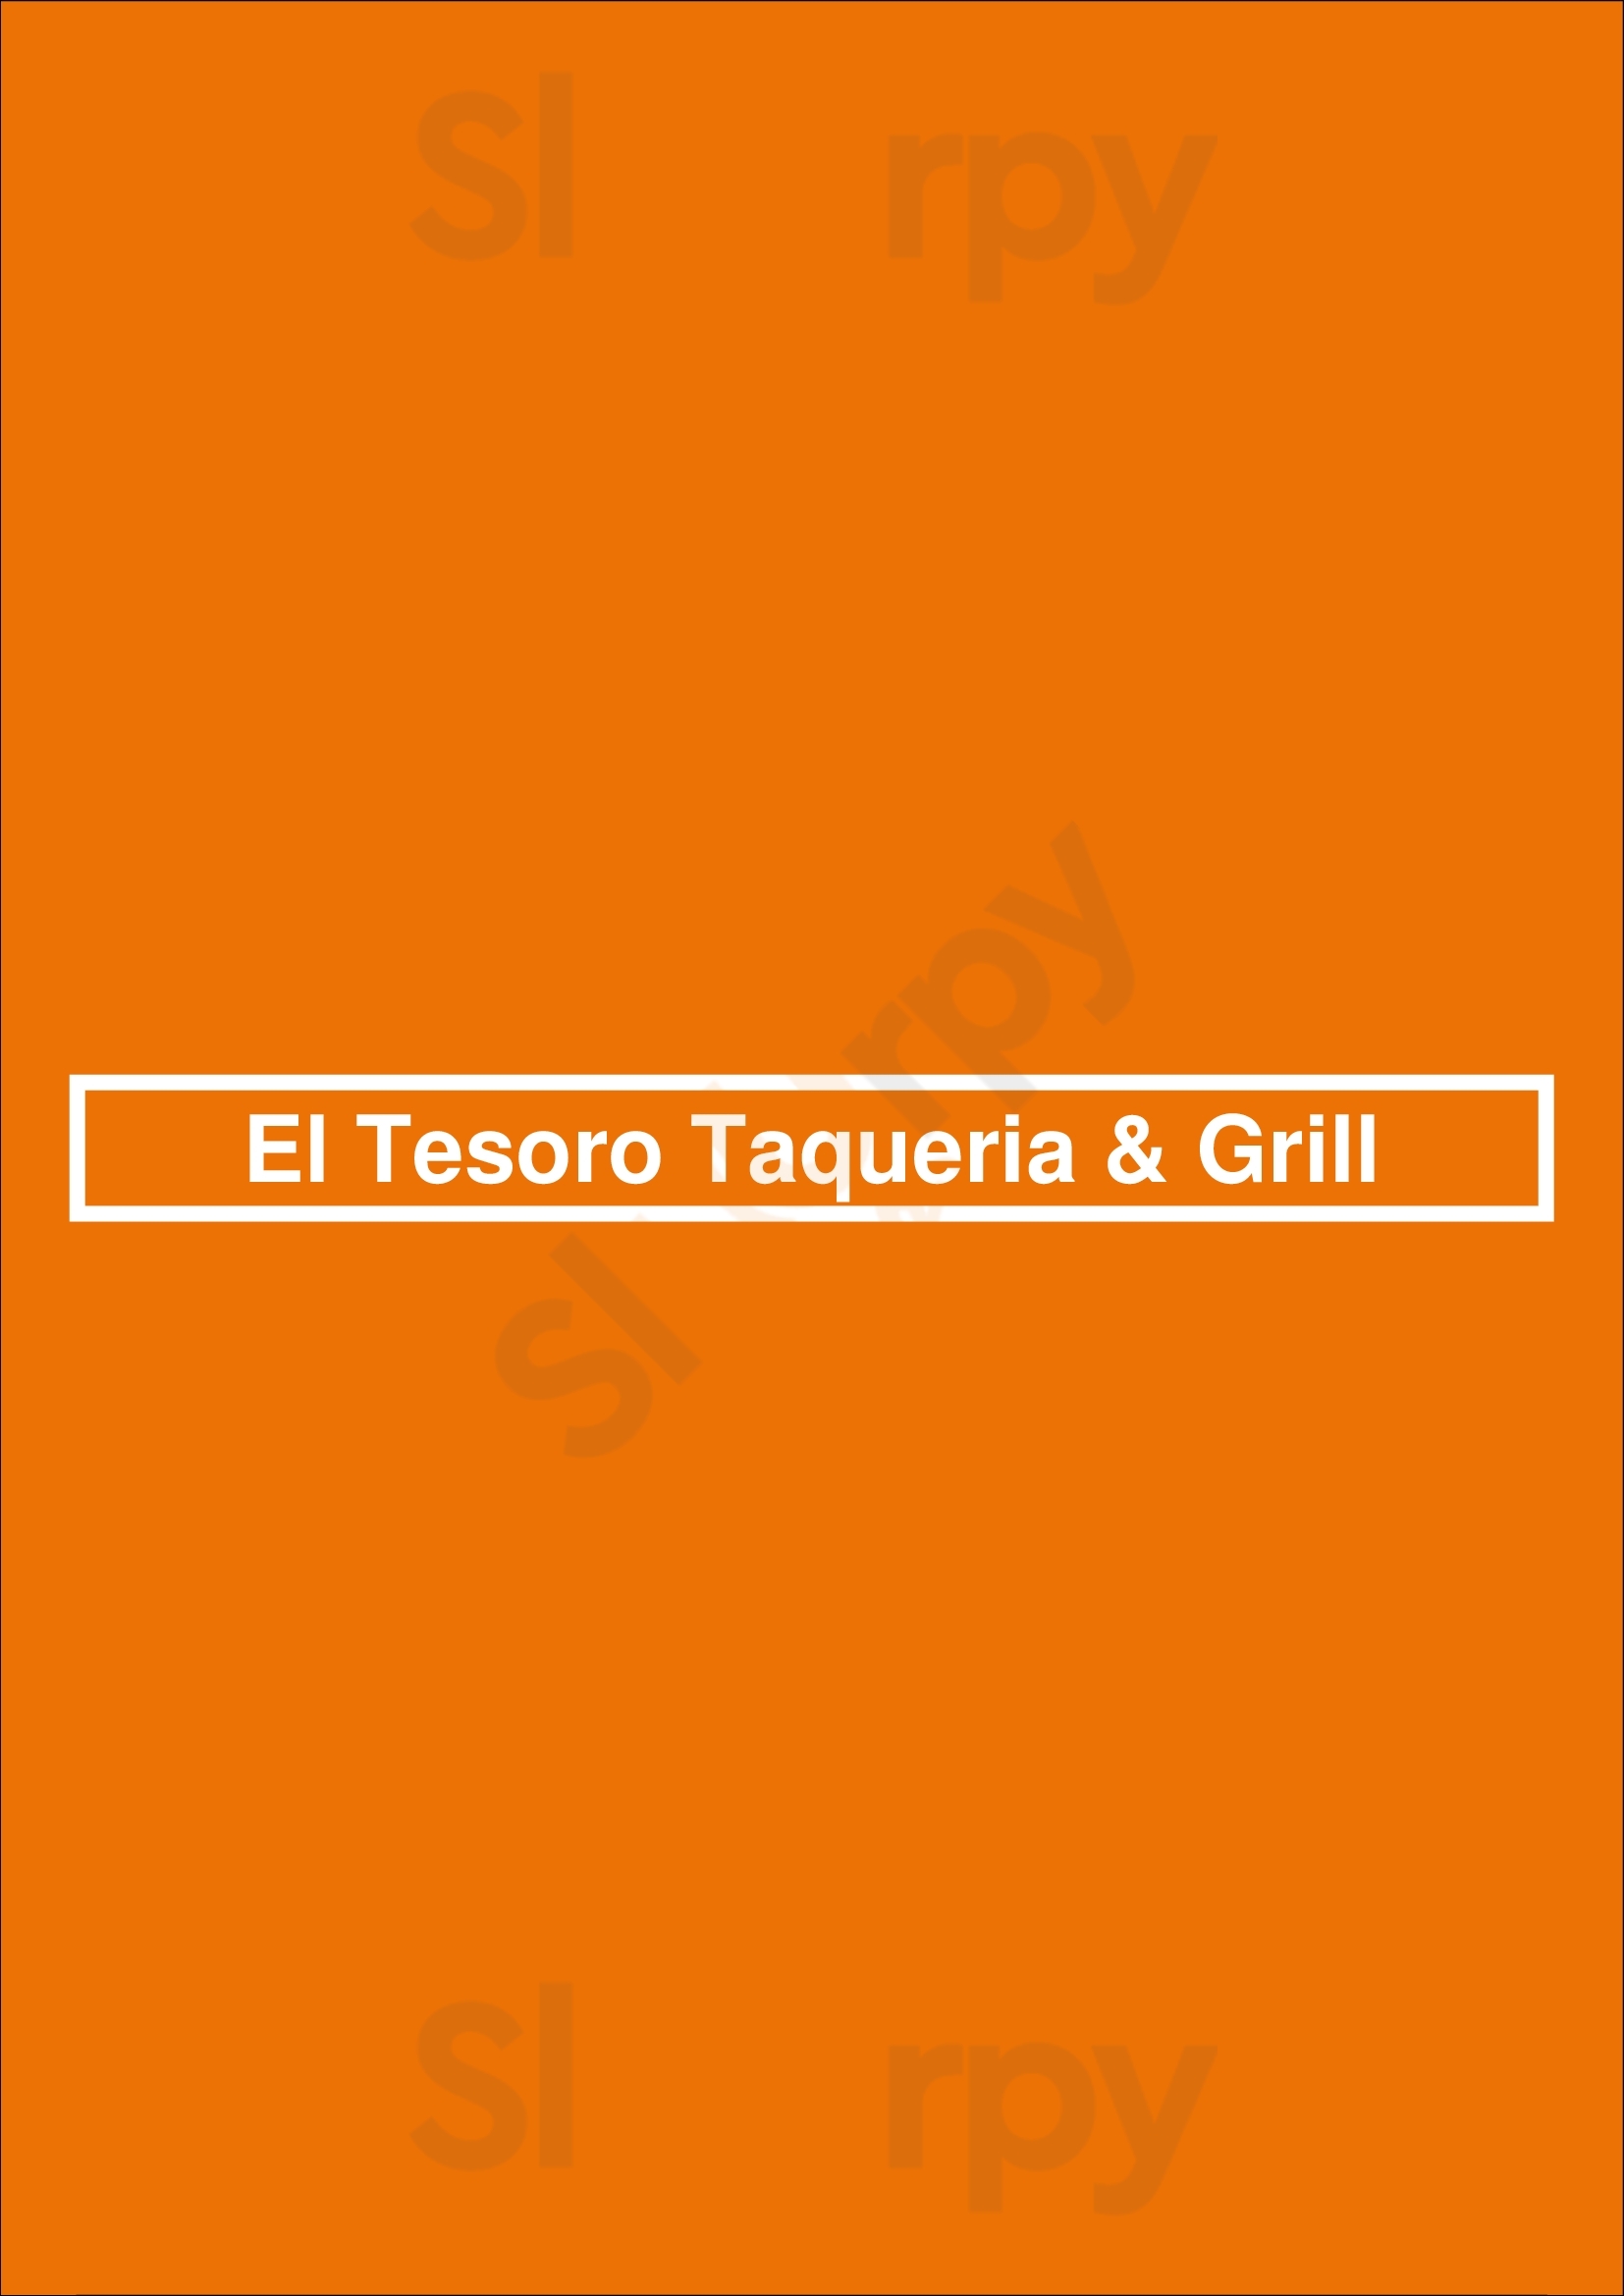 El Tesoro Taqueria & Grill San Francisco Menu - 1